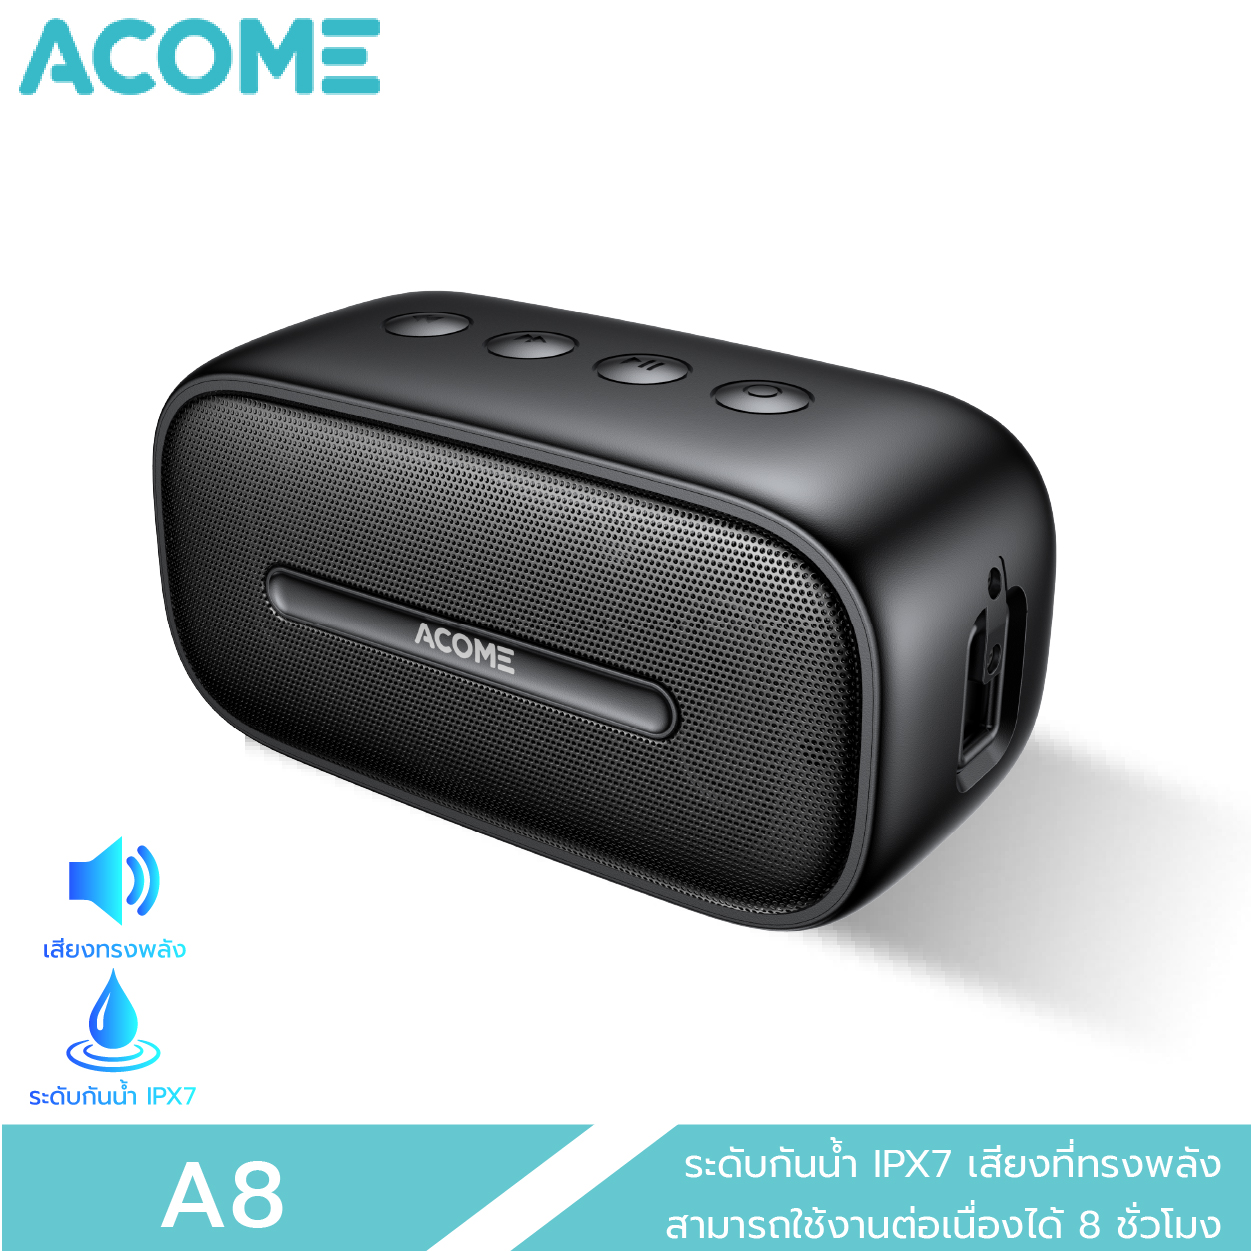 [รับโค๊ดส่วนลด 110 บาท ฟรีทันที] ACOME รุ่น A8 Bluetooth Speaker ลำโพงบลูทูธ ลำโพง ของแท้ 100% ประกัน 12 เดือน